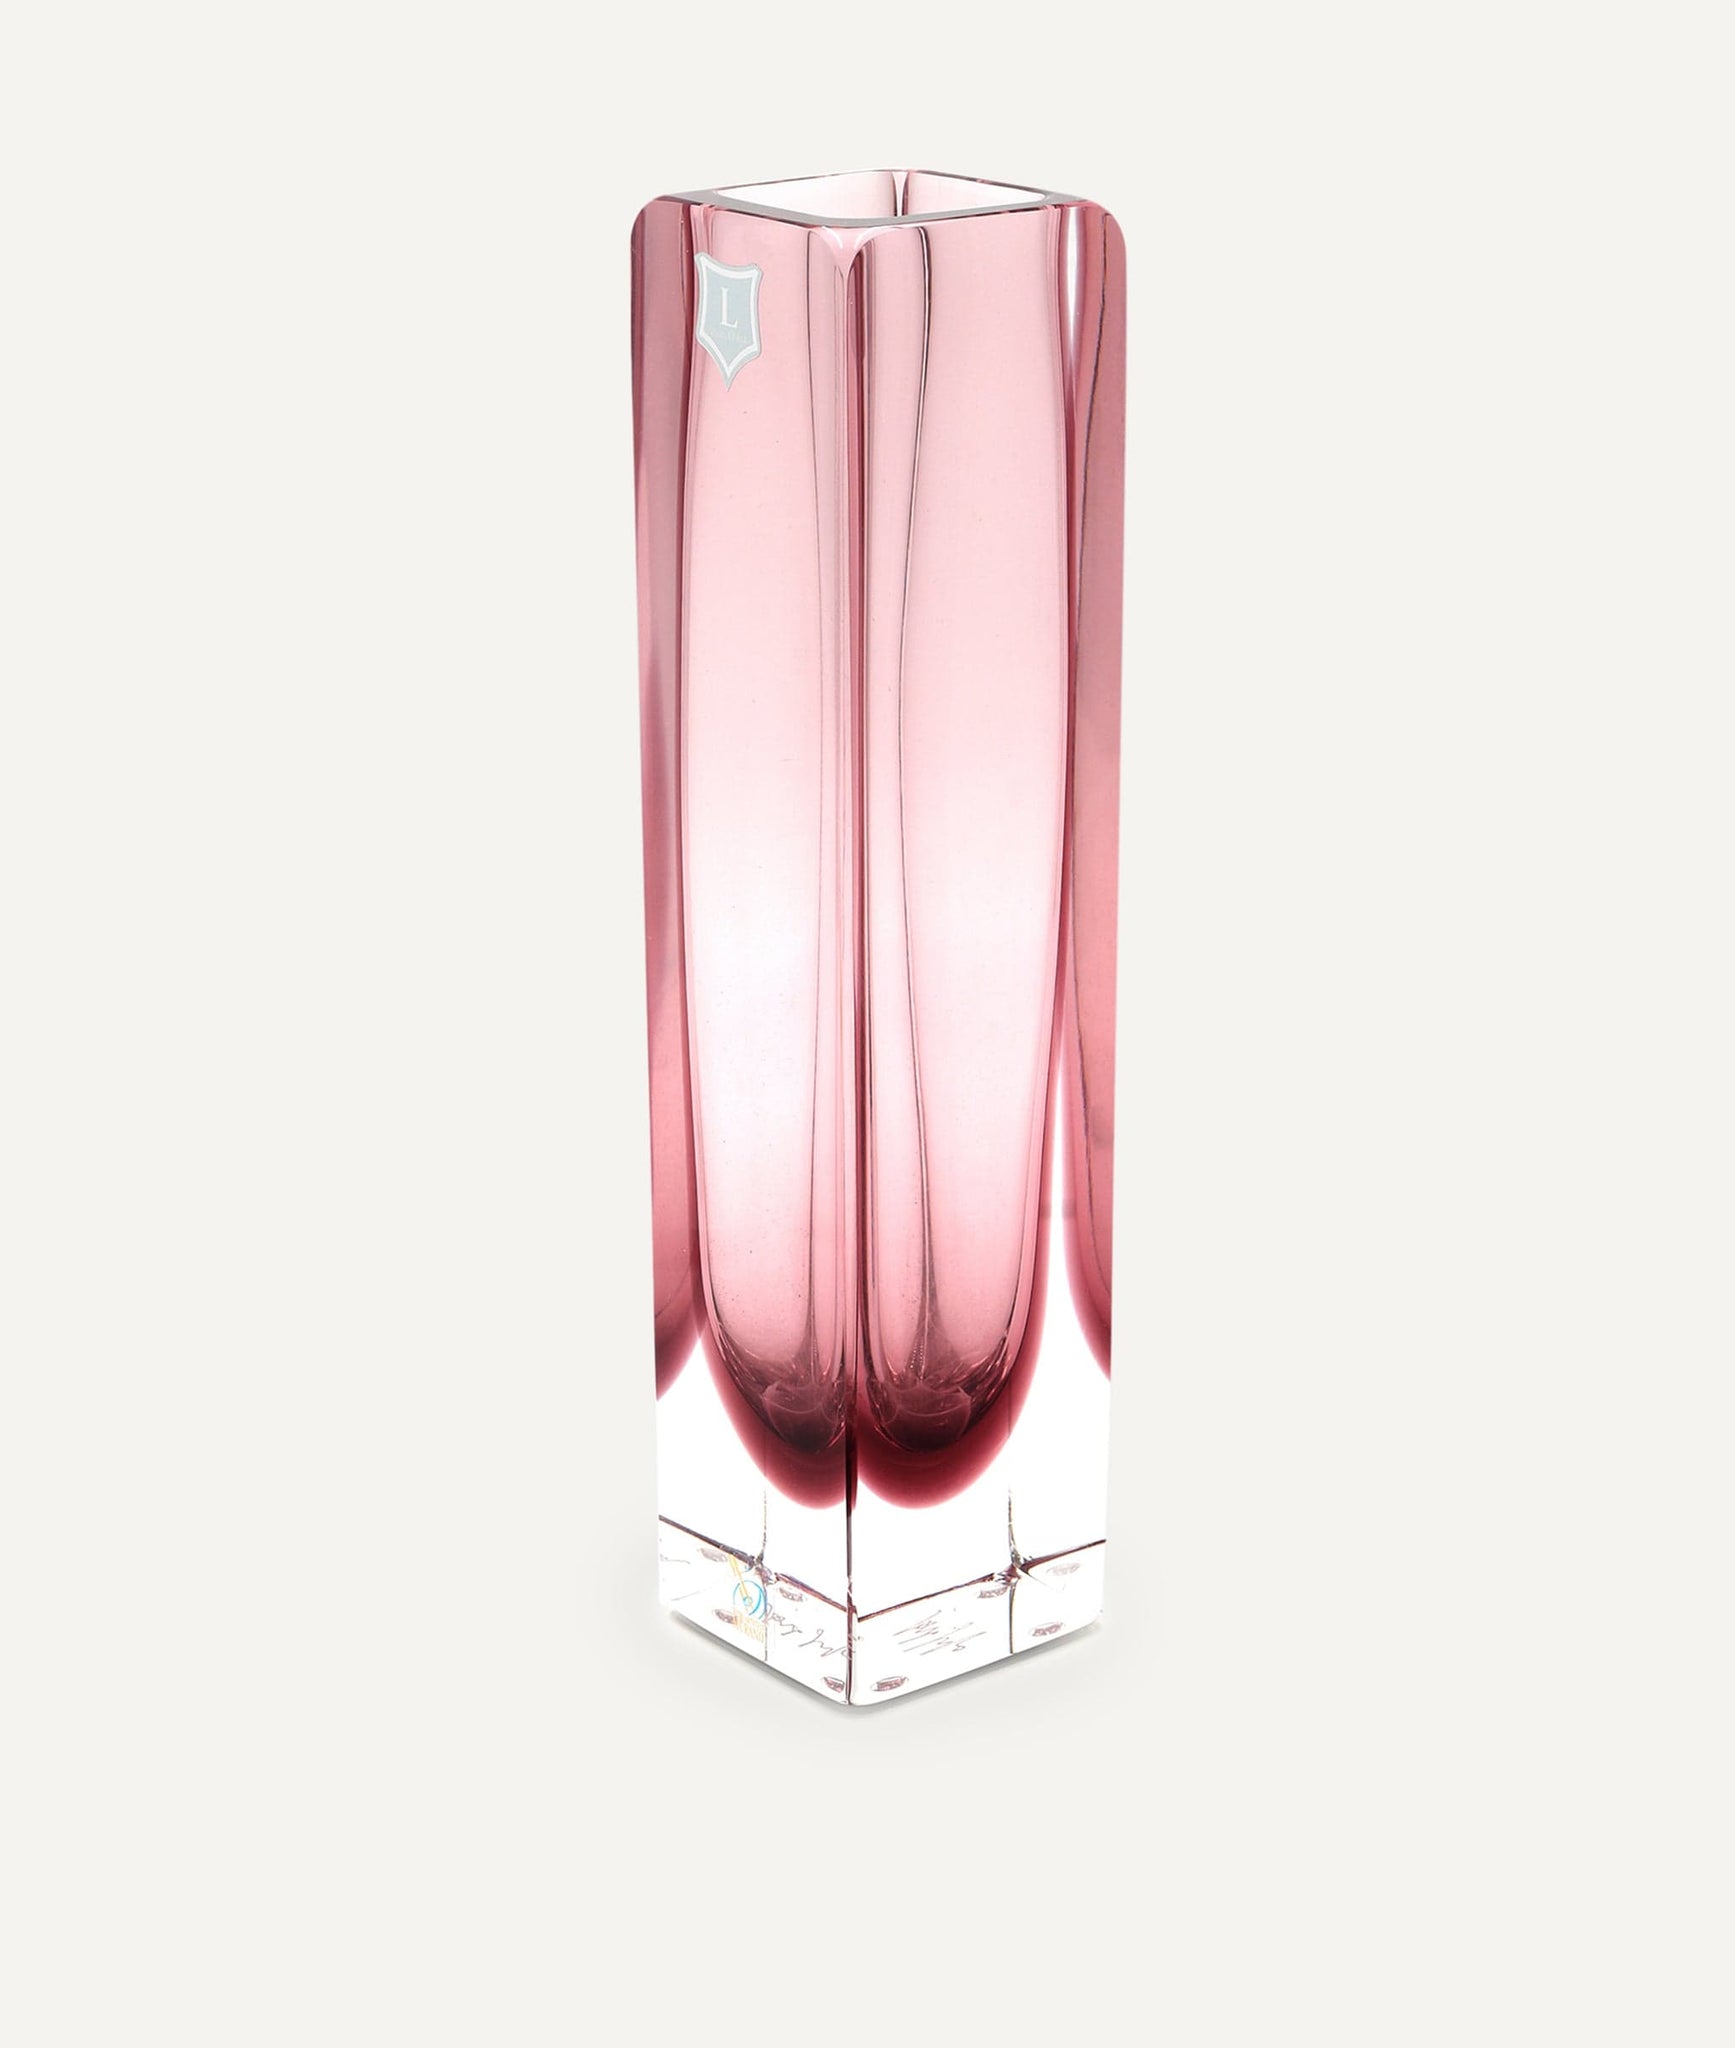 Quadrato Vase in Murano Glass